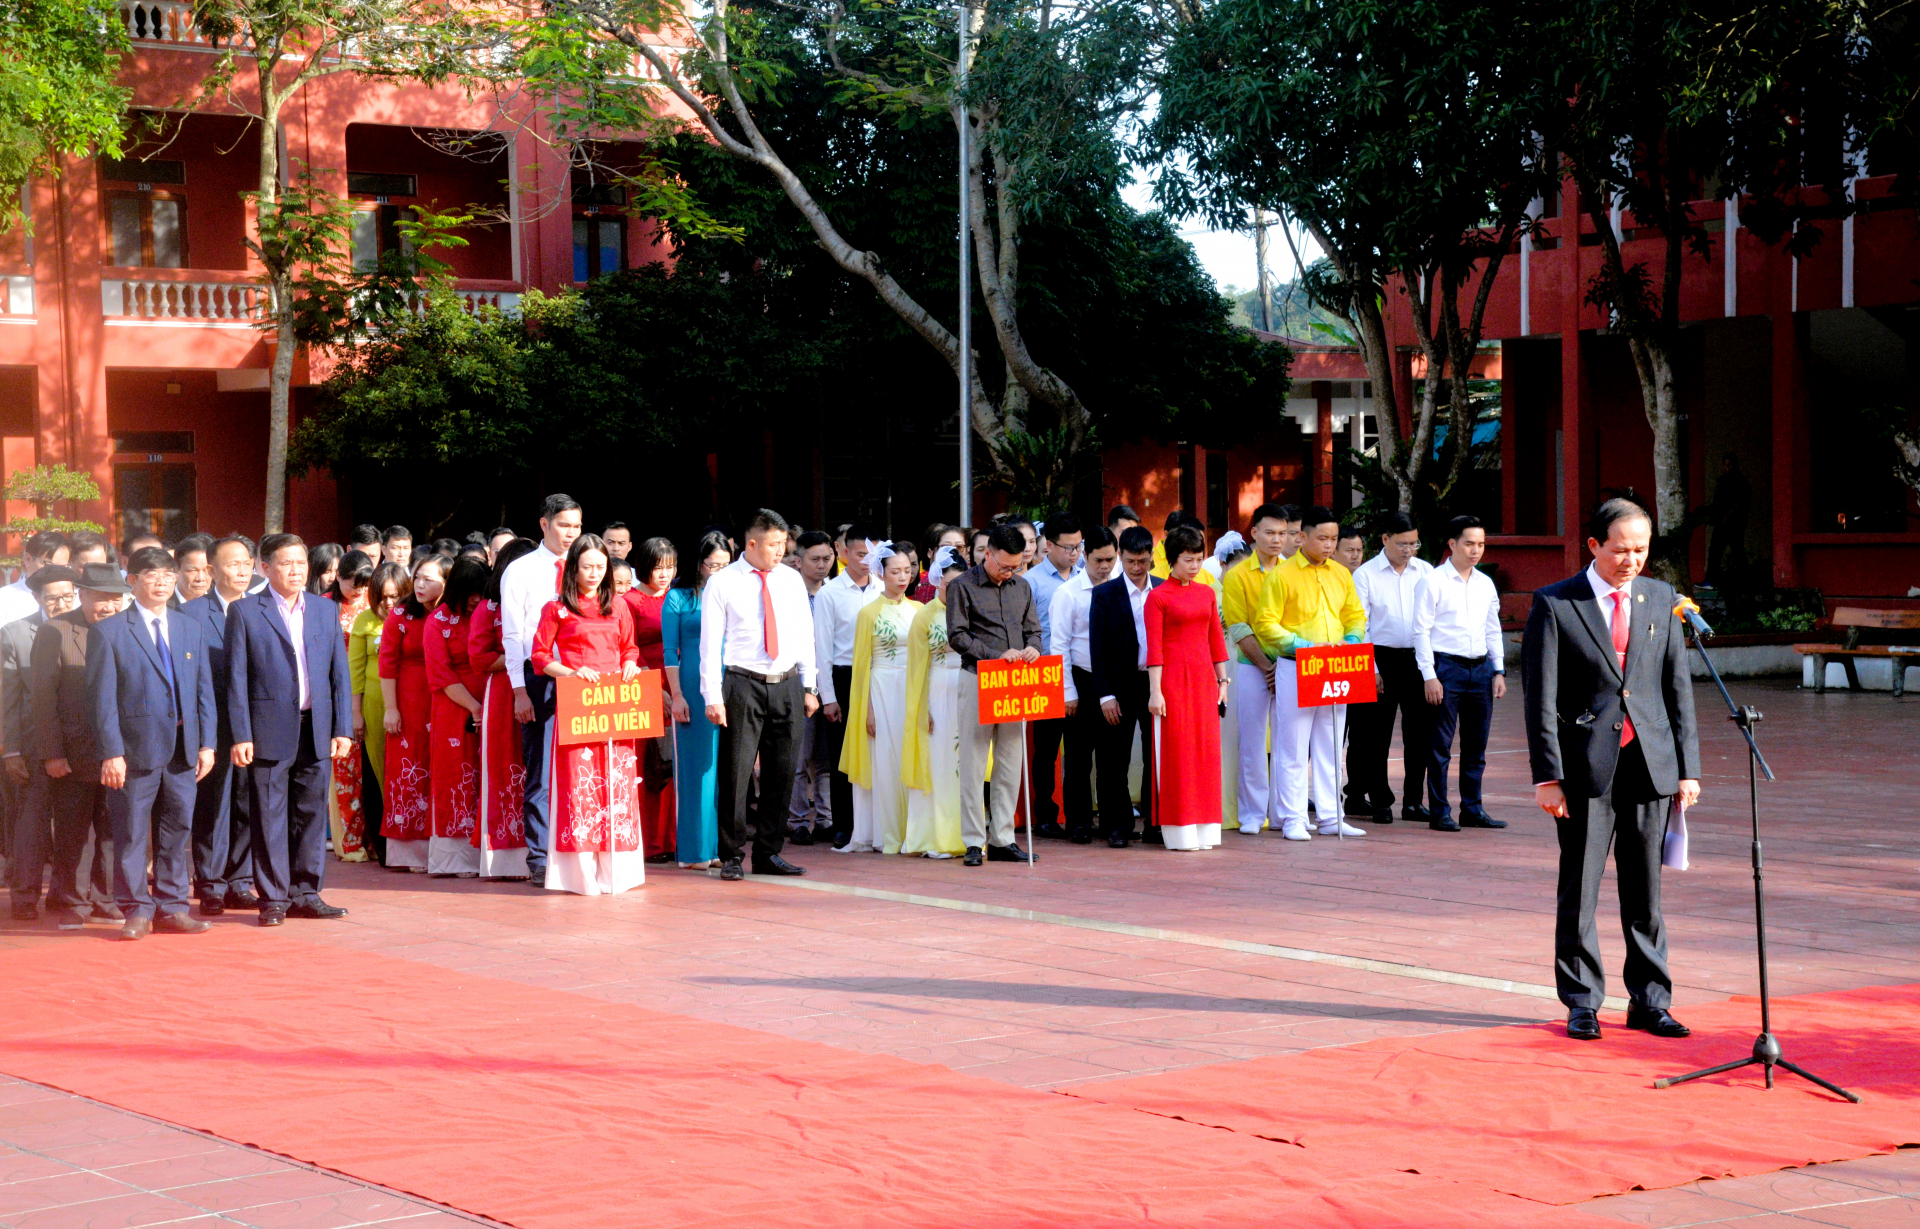 Các đại biểu cùng toàn thể cán bộ, giảng viên, học viên của Trường Chính trị tỉnh dành phút mặc niệm trước Tượng đài Bác Hồ.